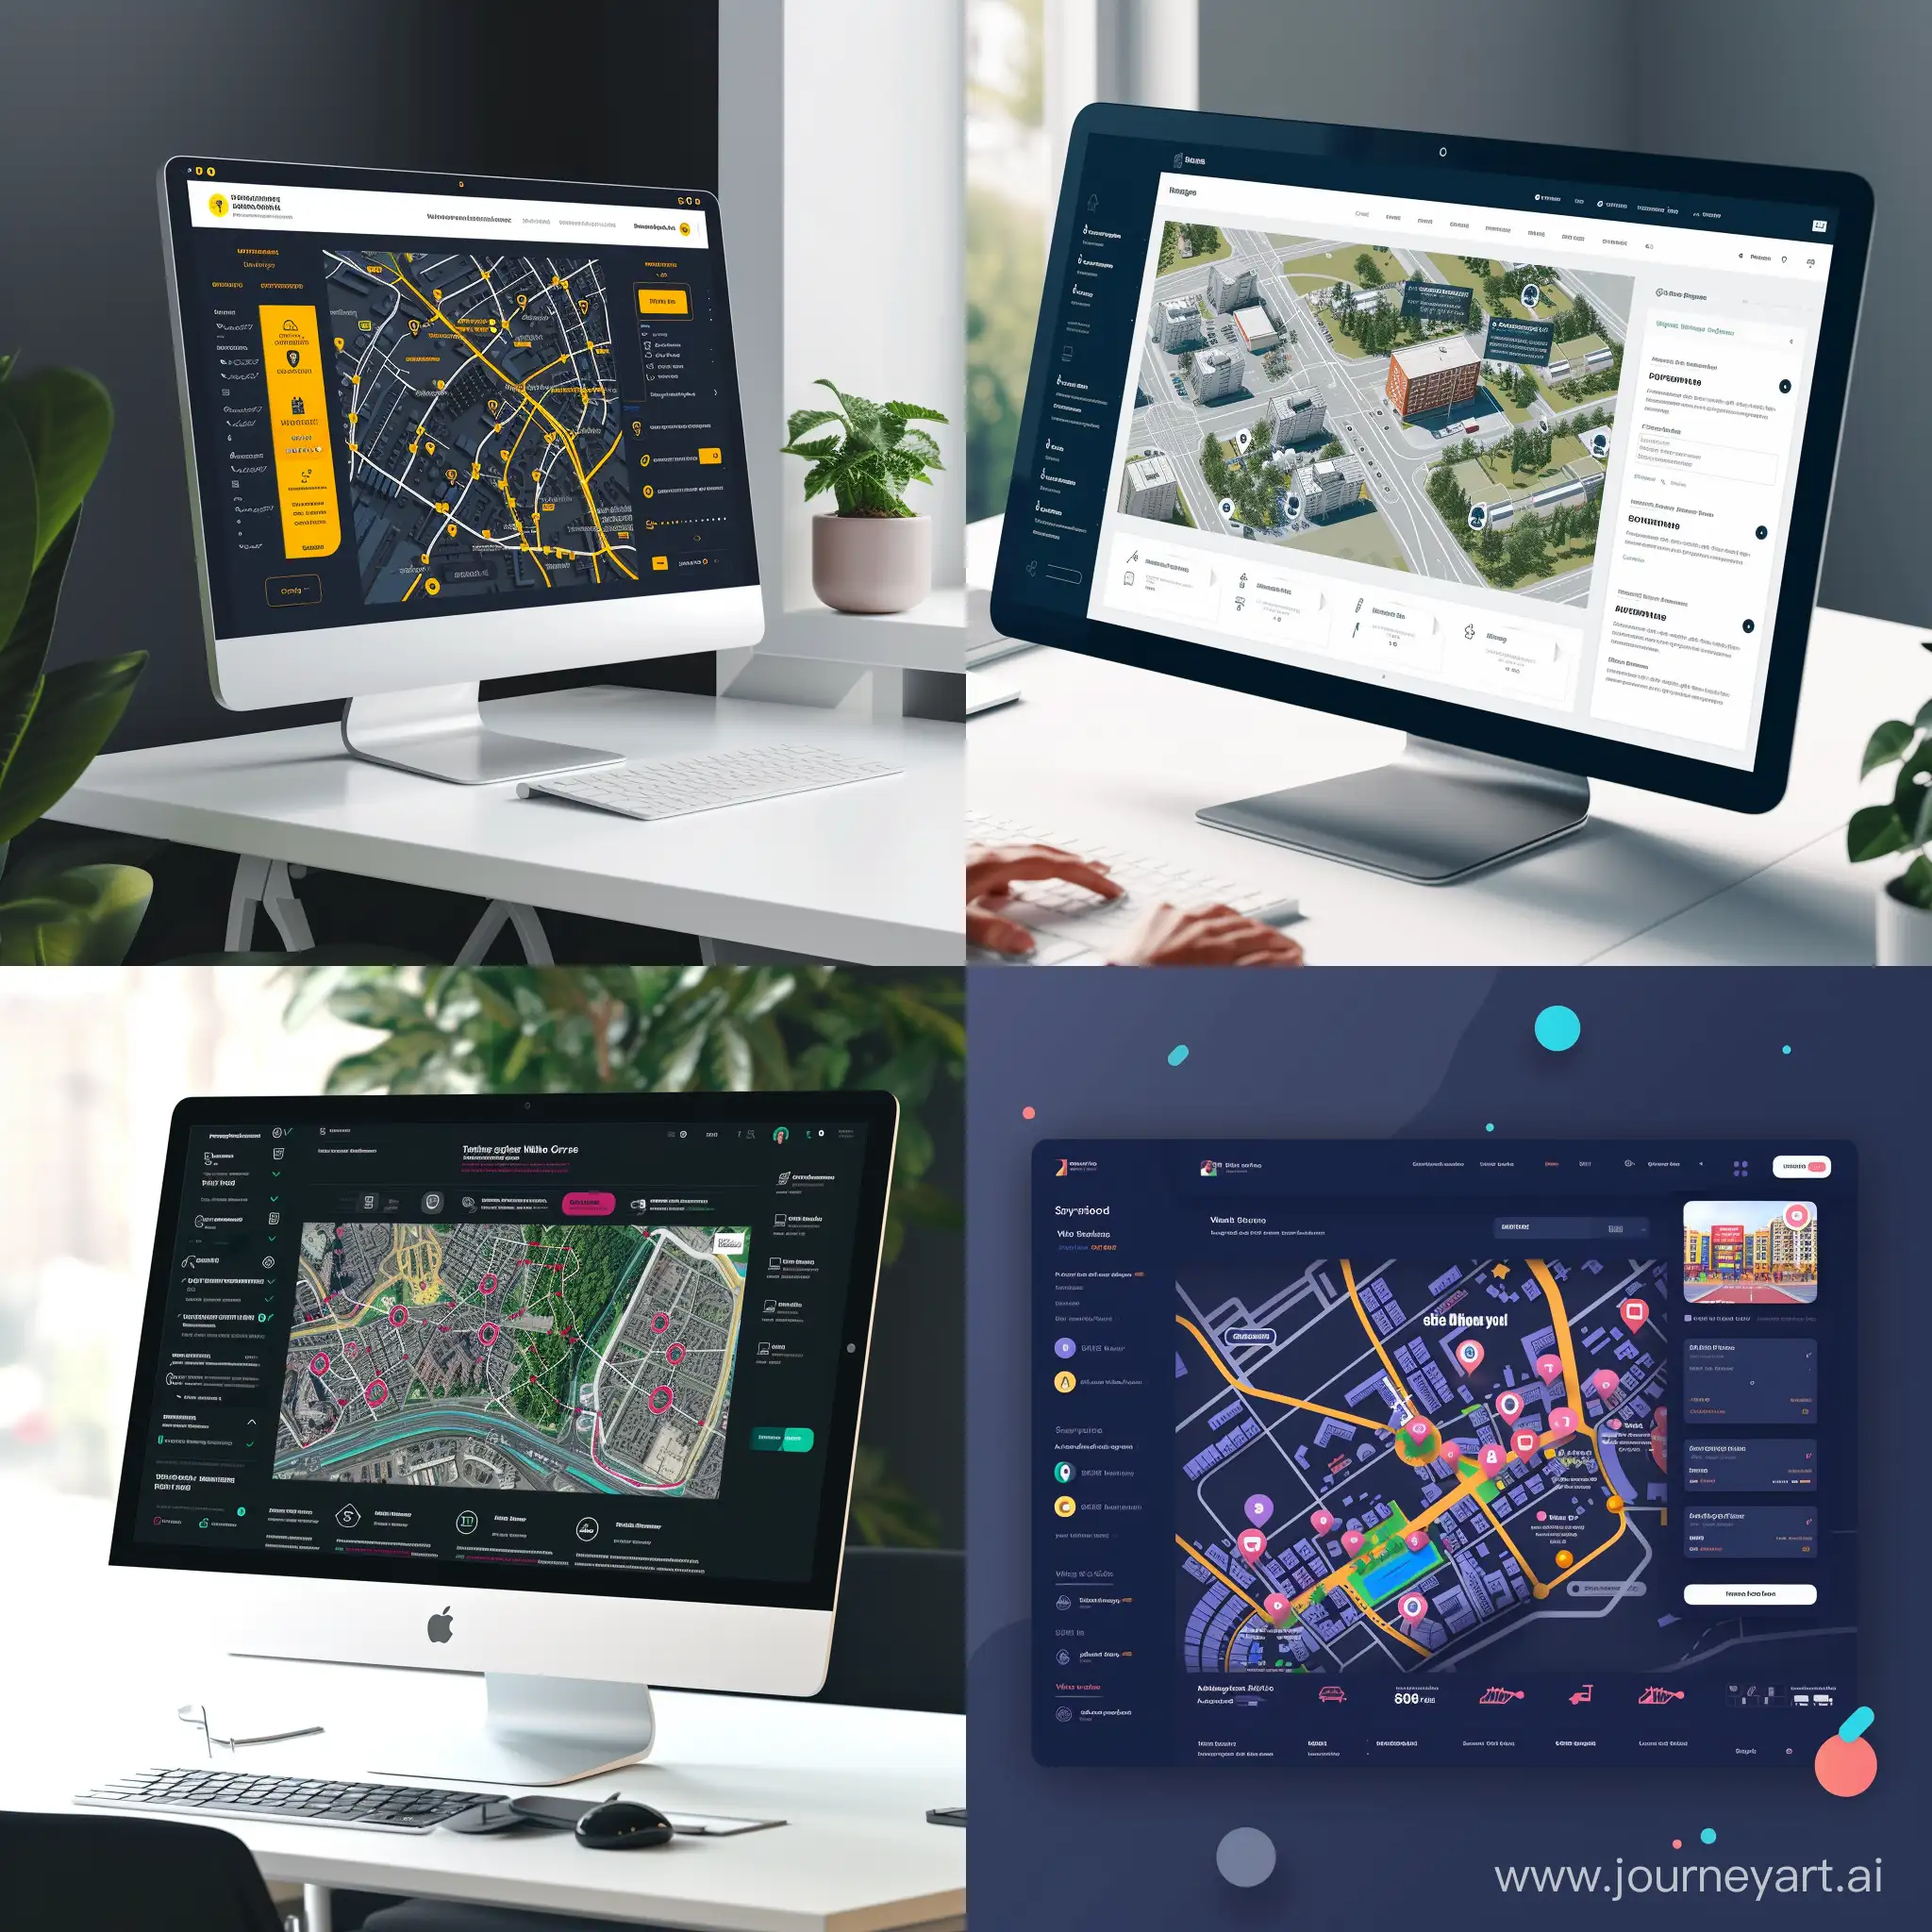 дизайн интерфейса страниц сайта с интерактивной картой коммунальных услуг города